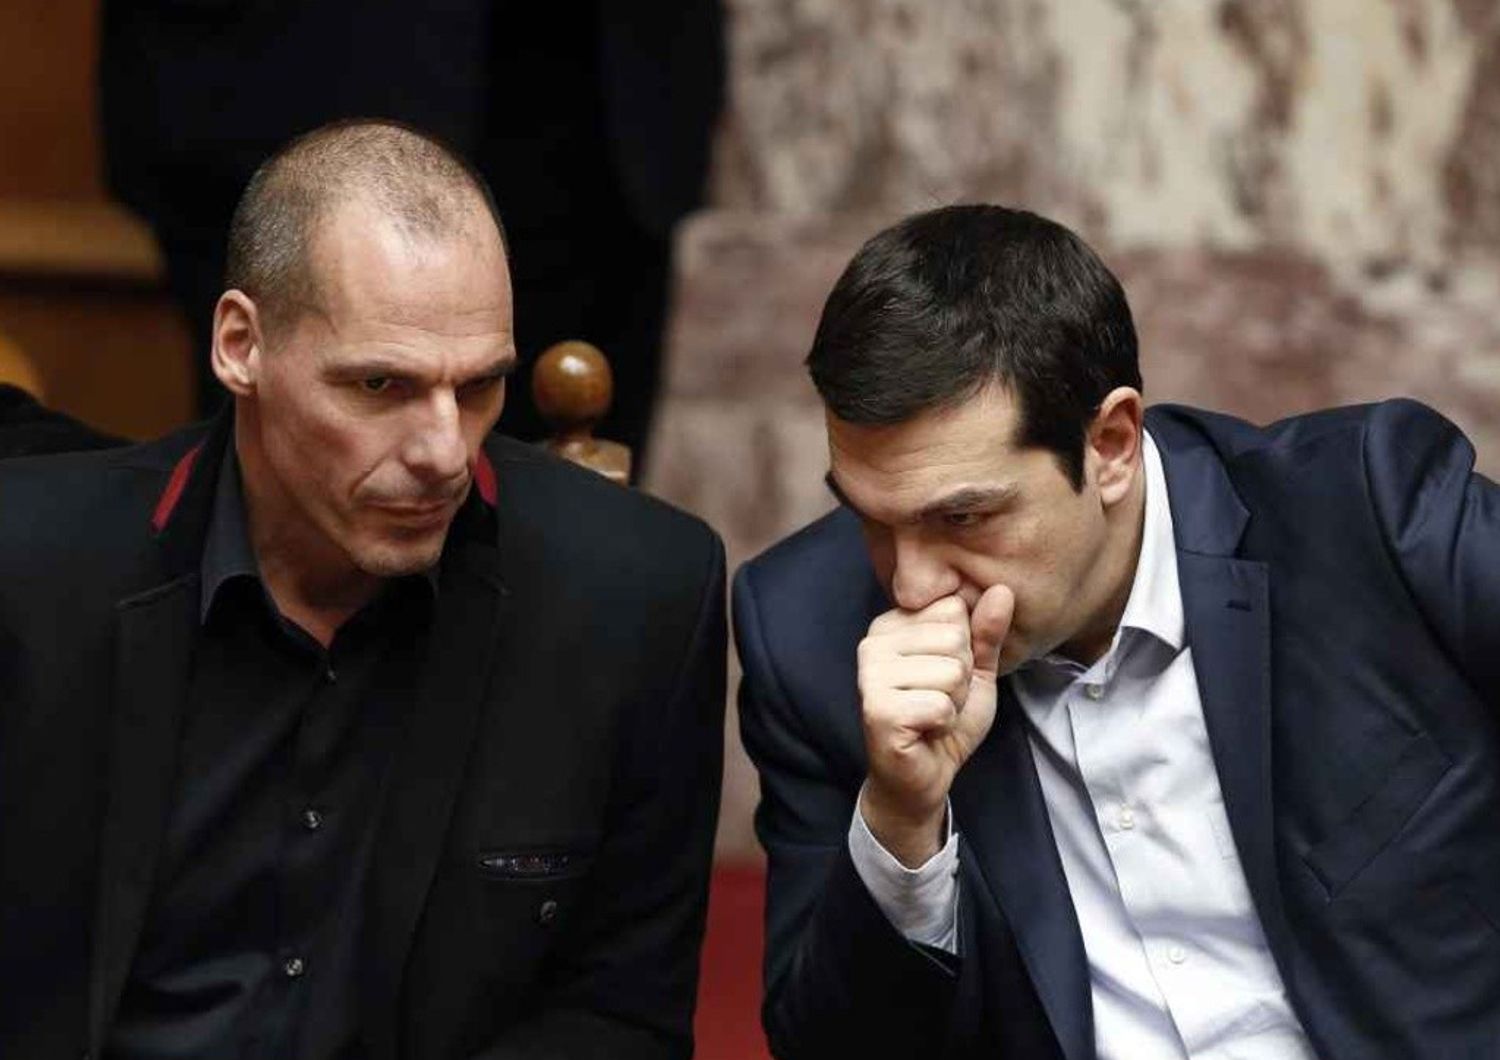 Grecia: Grexit o non Grexit, effetti dell'austerita' alla JCU